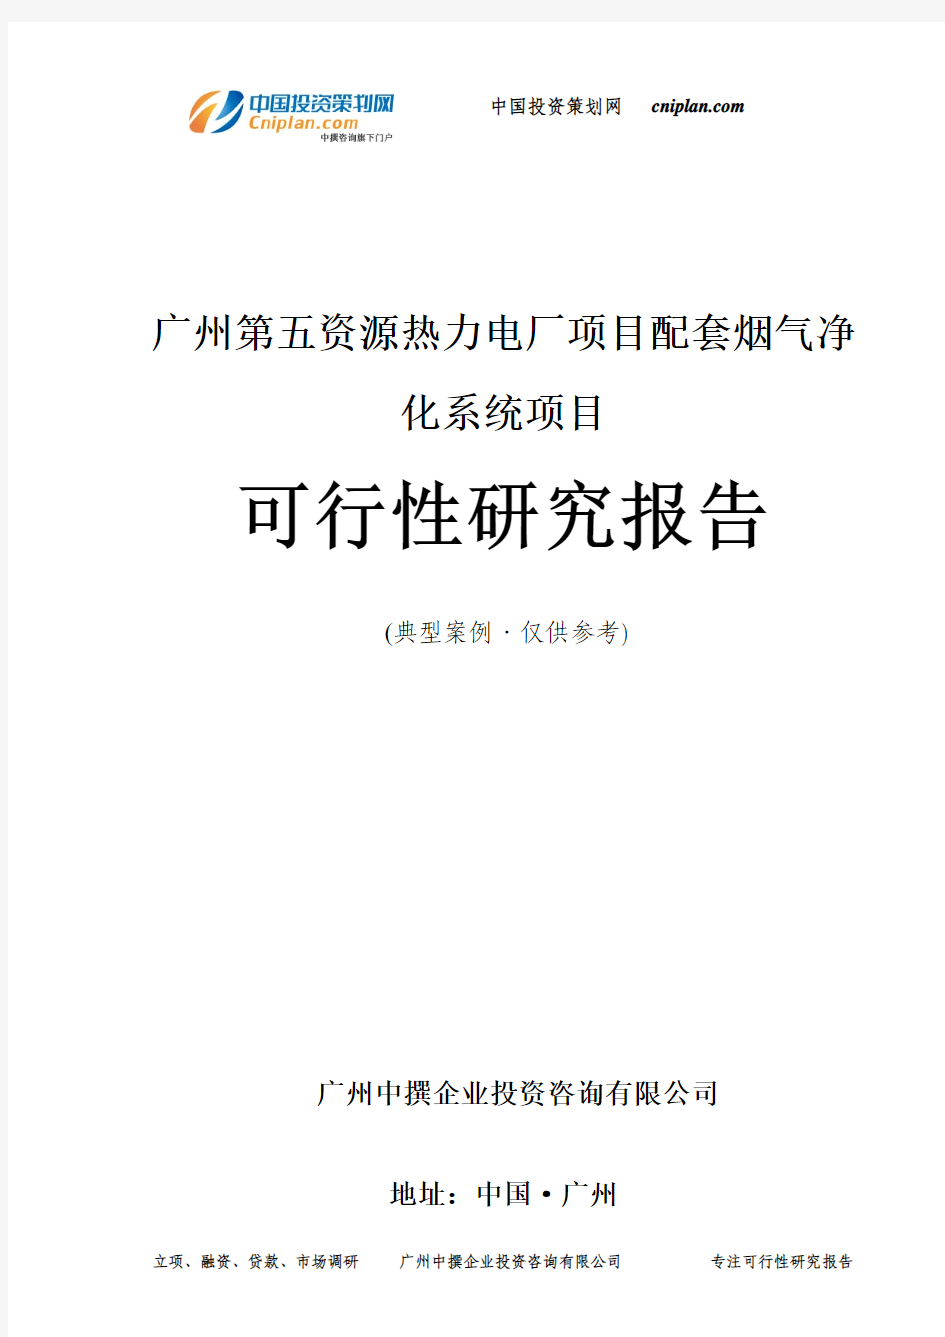 广州第五资源热力电厂项目配套烟气净化系统项目可行性研究报告-广州中撰咨询